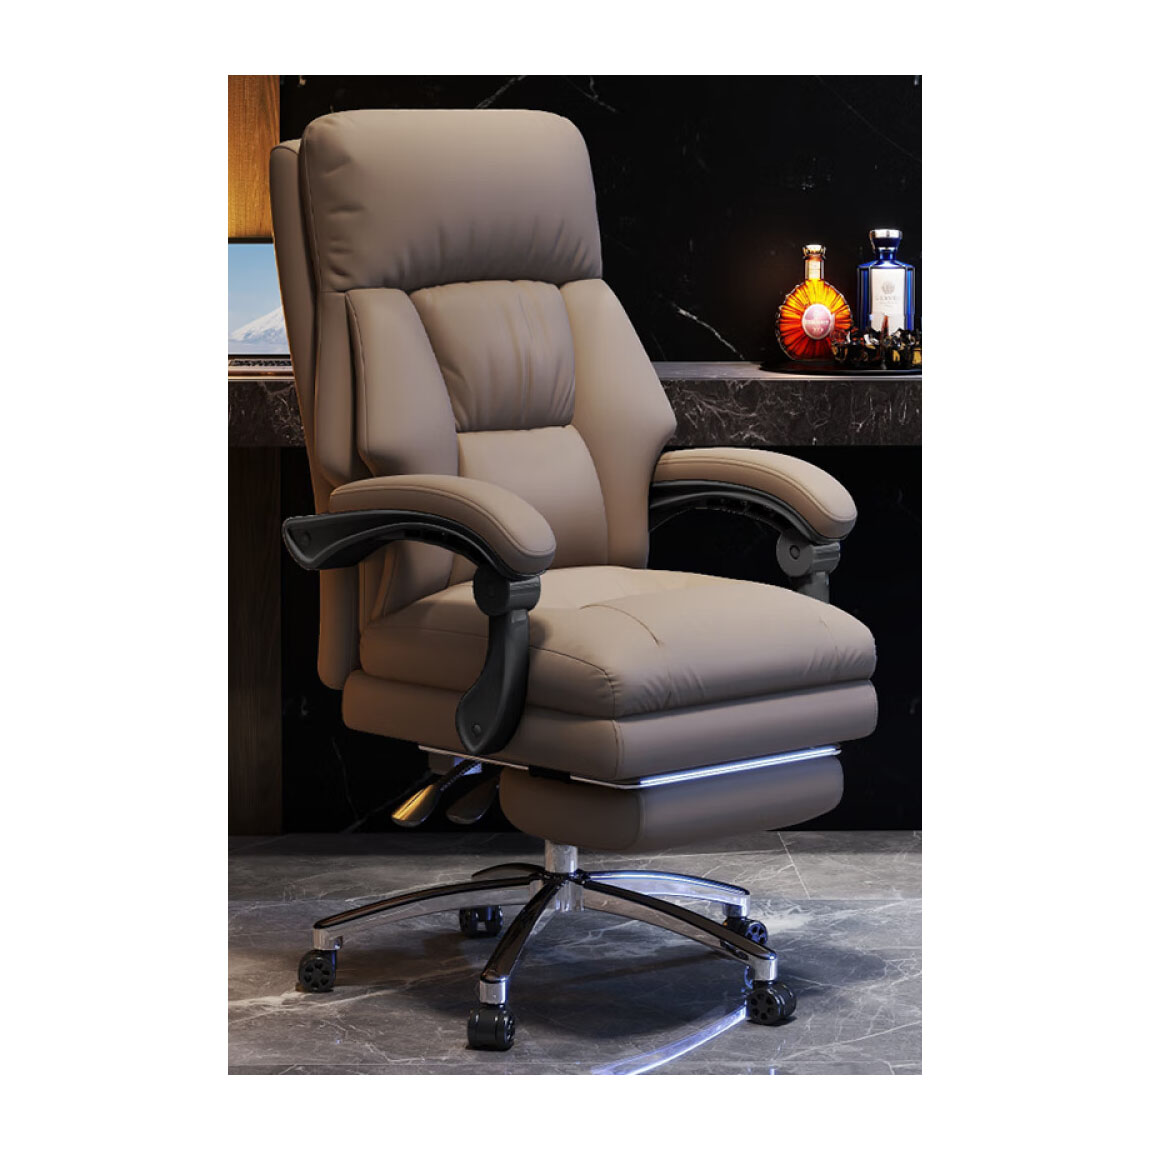 Игровое кресло Insdea HDA063, губка, сталь, с подставкой для ног, хаки